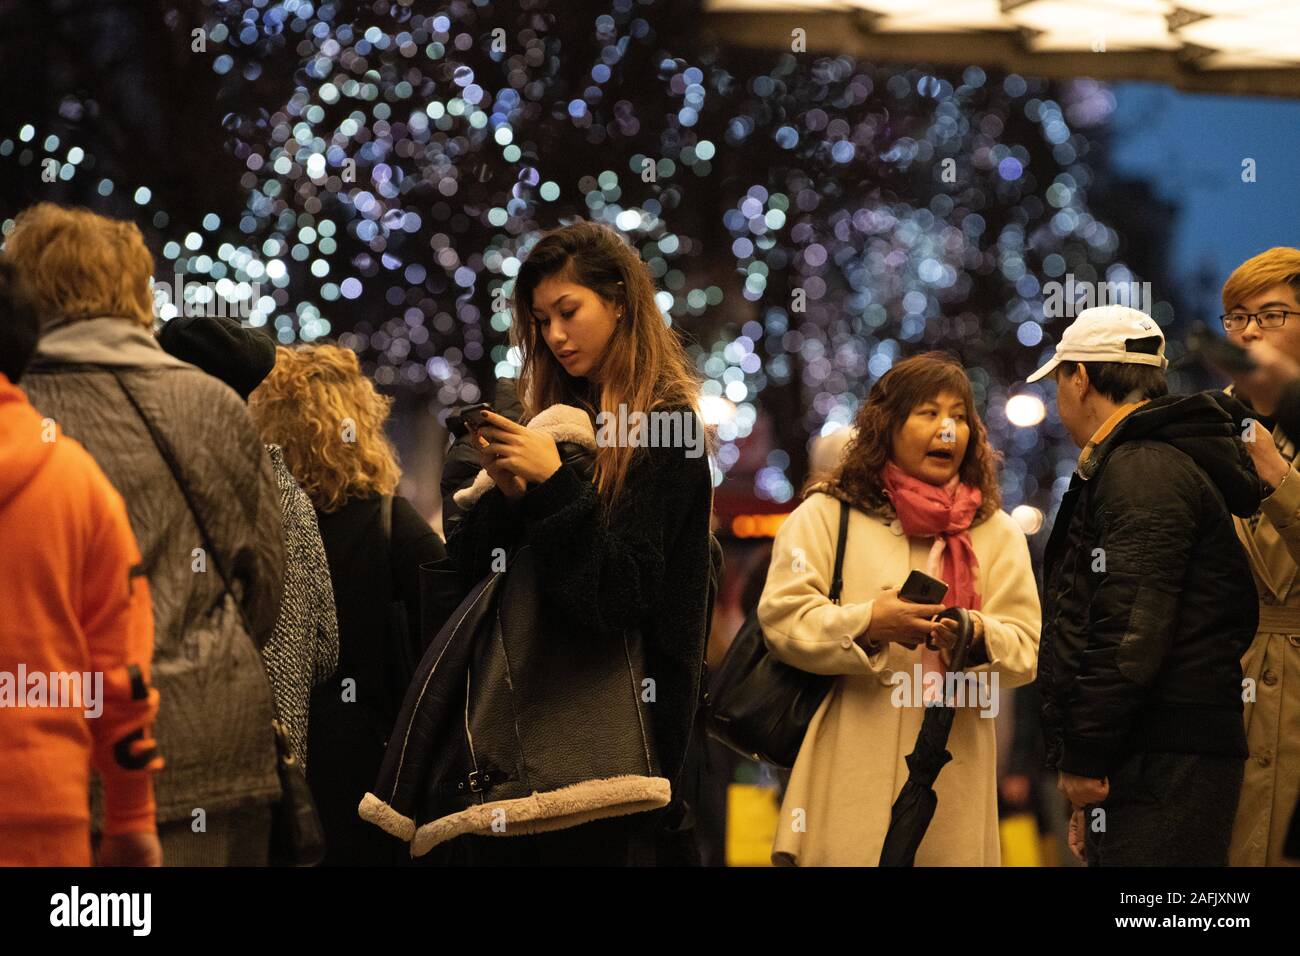 Los compradores de Navidad haciendo compras navideñas de última hora, fuera de Selfridges, Londres, Reino Unido. Foto de stock